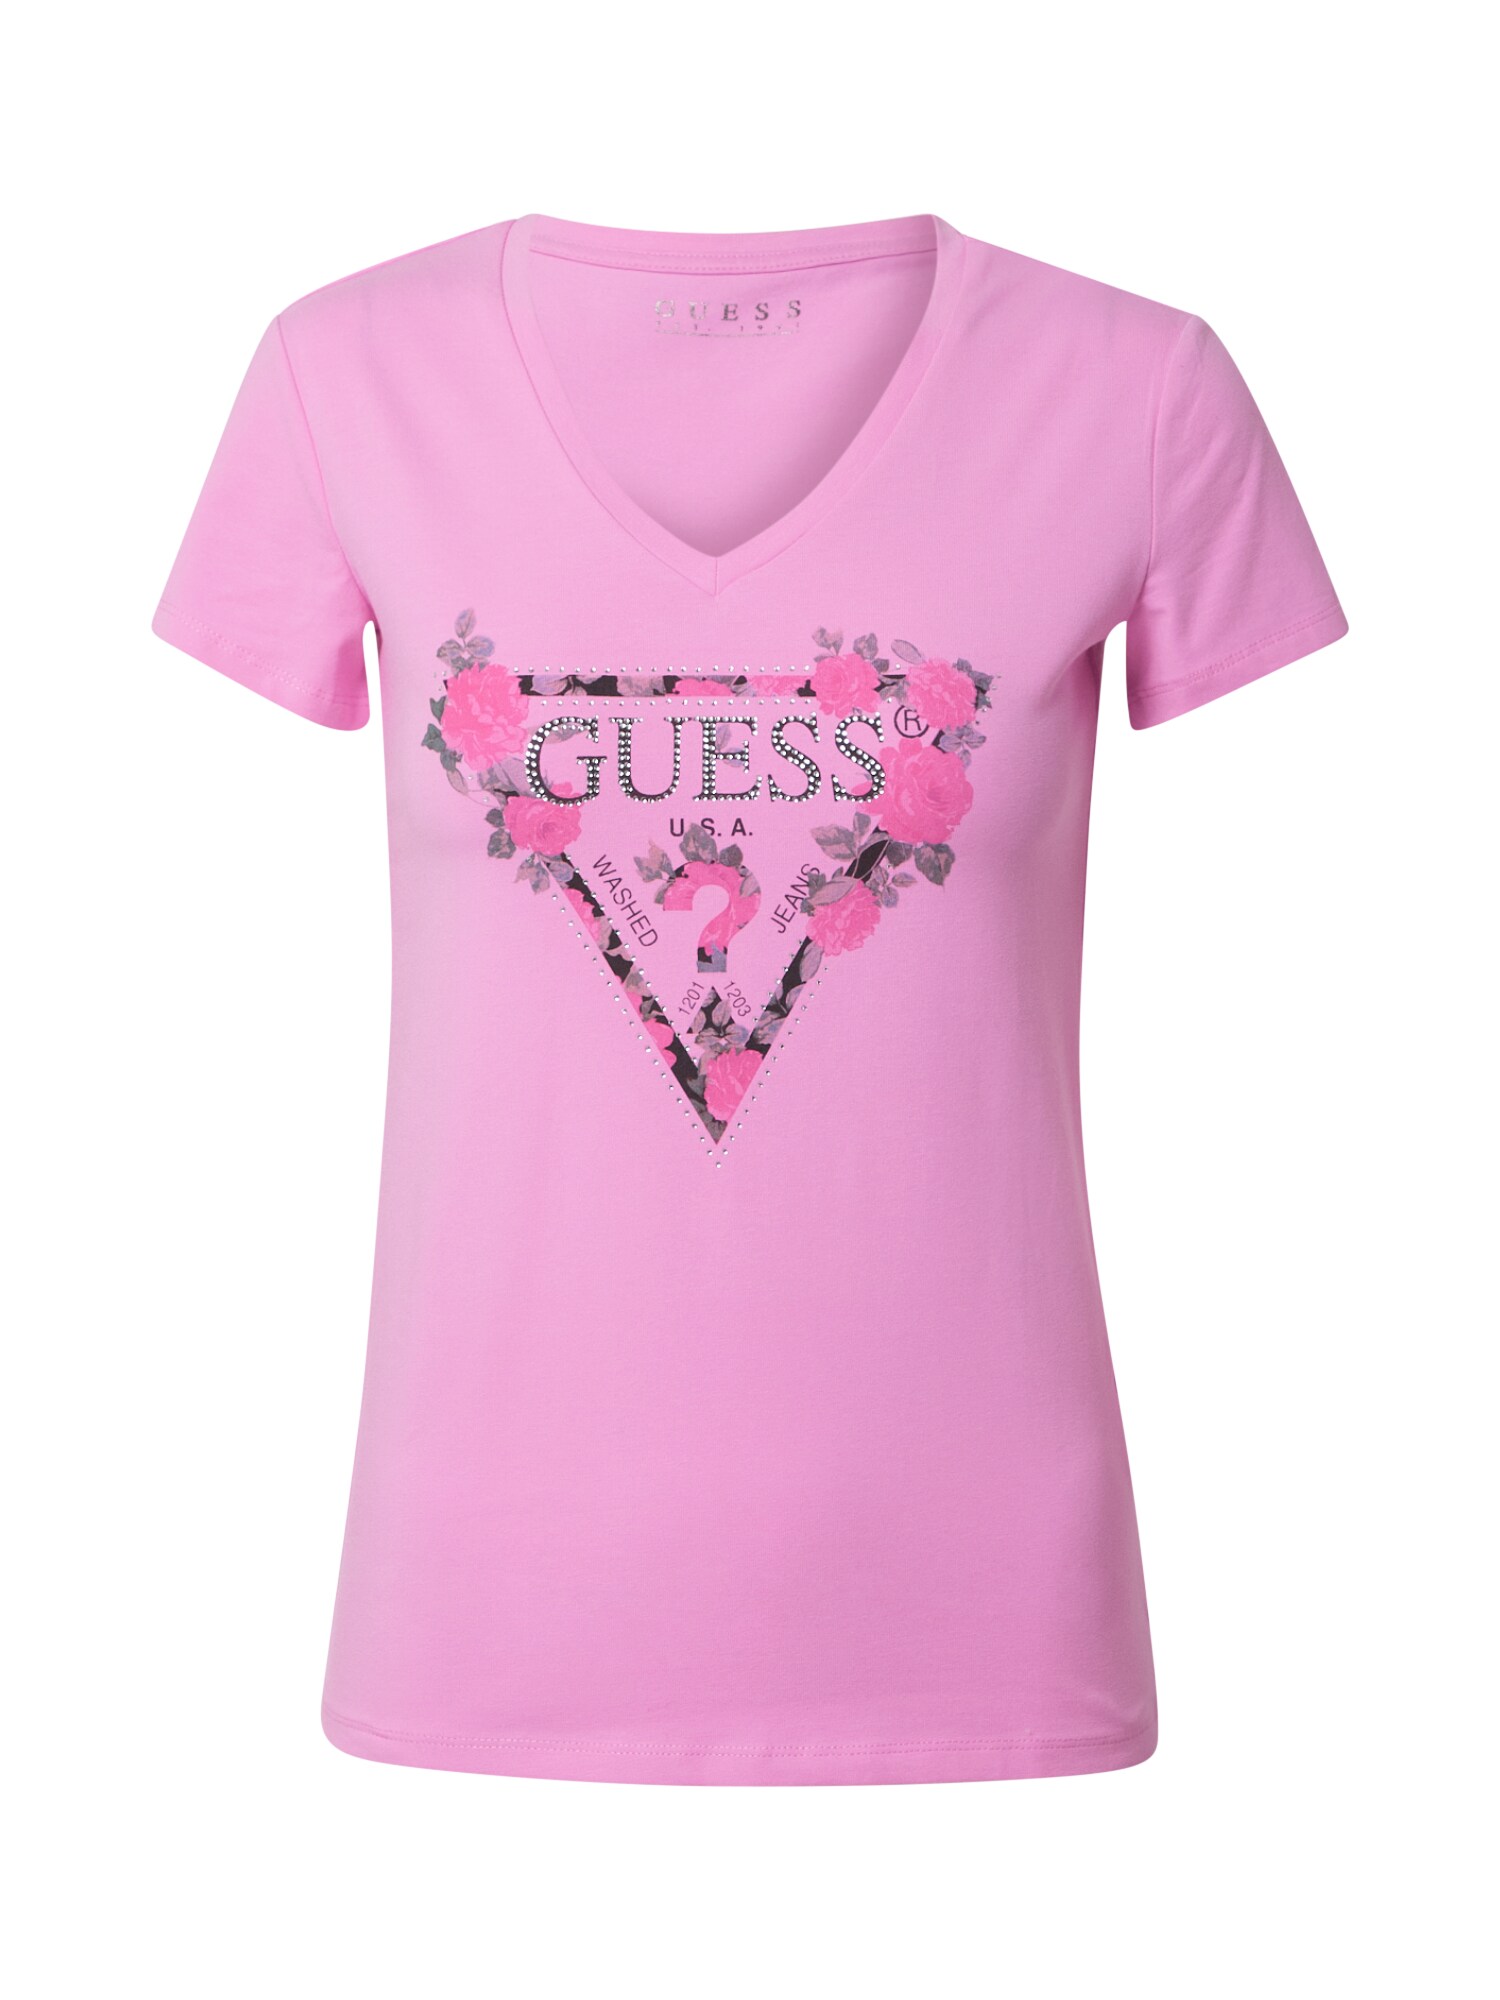 GUESS Marškinėliai  mišrios spalvos / rožinė